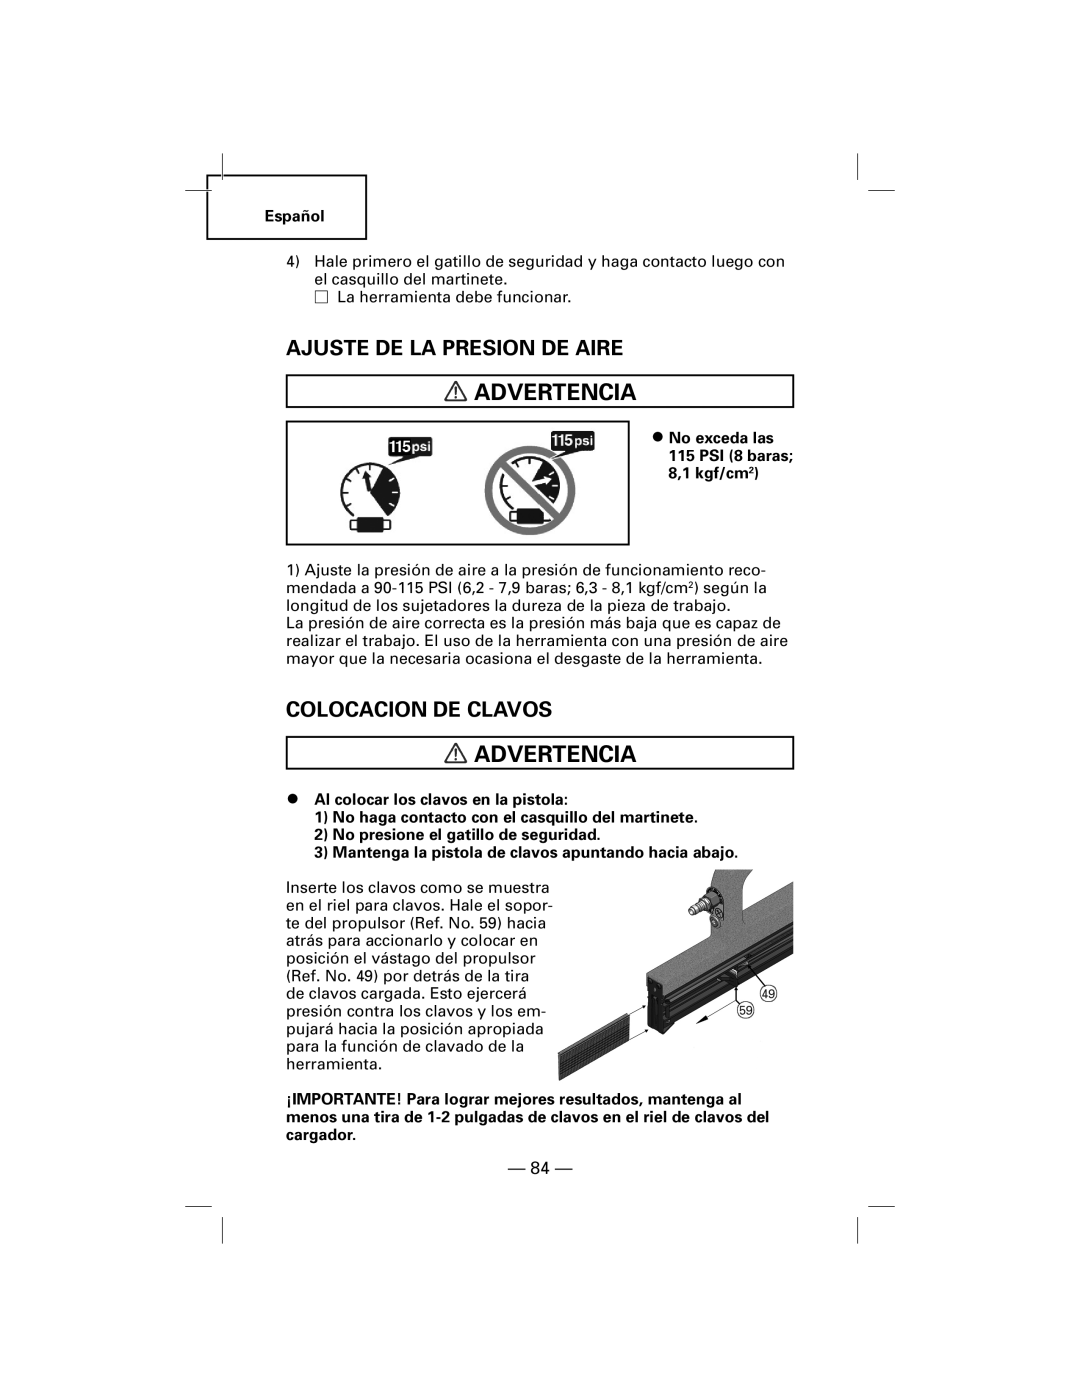 Hitachi NT50AGF manual Ajuste De La Presion De Aire, Colocacion De Clavos, Advertencia 